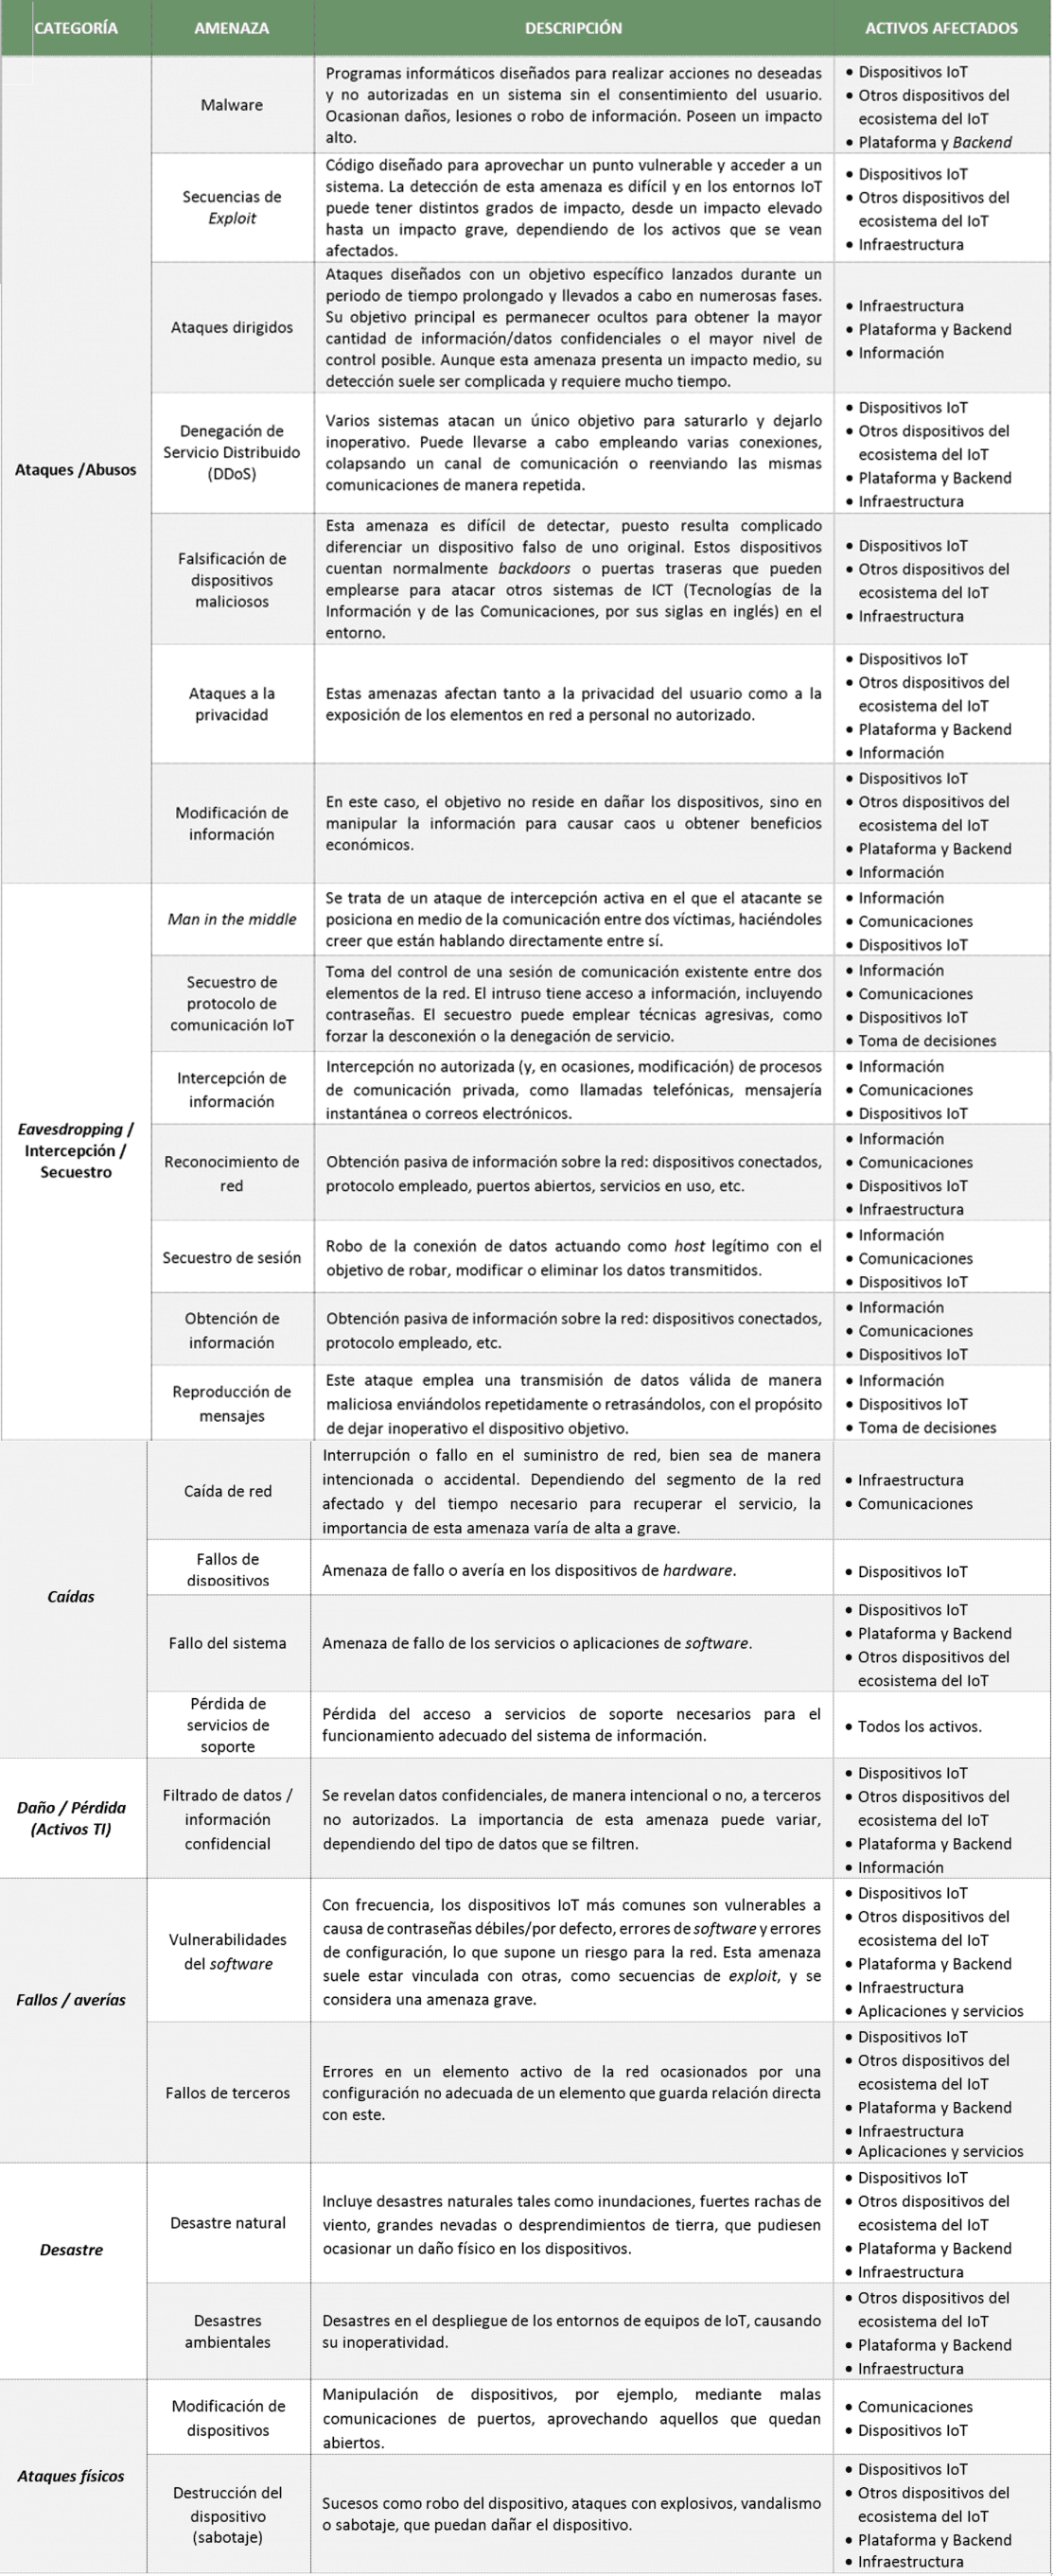 tabla referencia la taxonomía de amenazas del estudio Baseline Security Recommendations for IoT desarrollado por la ENISA.